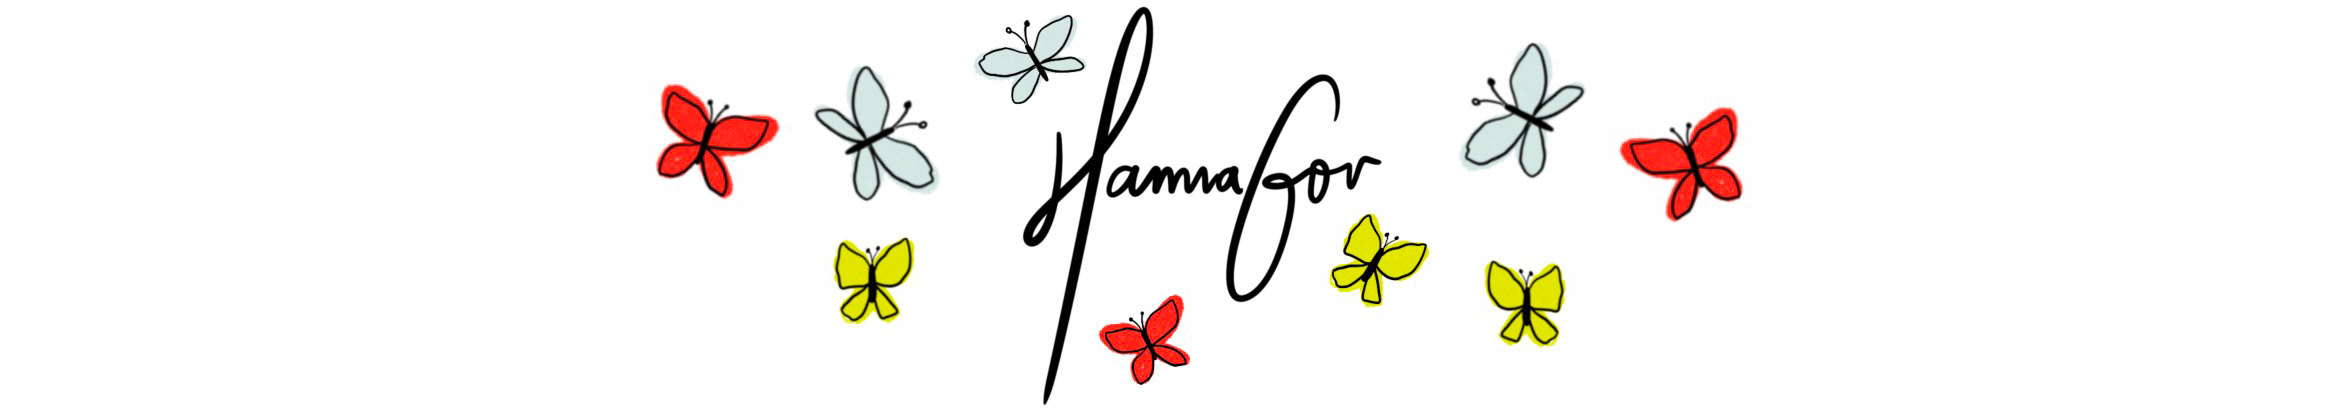 Bannière de profil de Hanna Gov